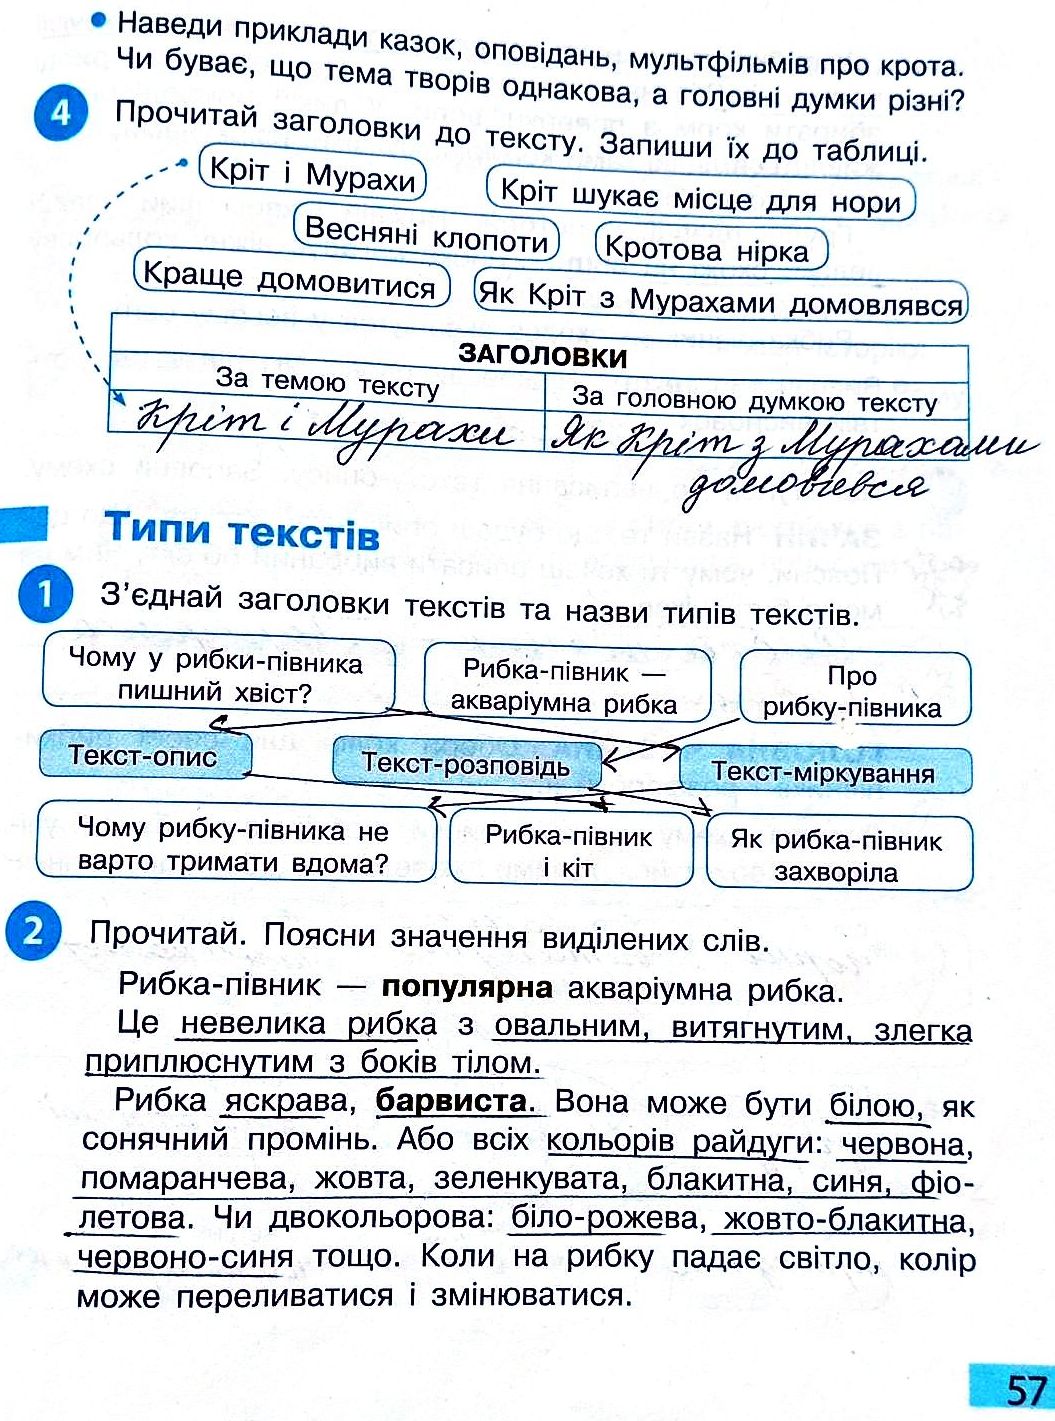 Сторінка 57 частина 2 гдз 3 клас робочий зошит українська мова Большакова